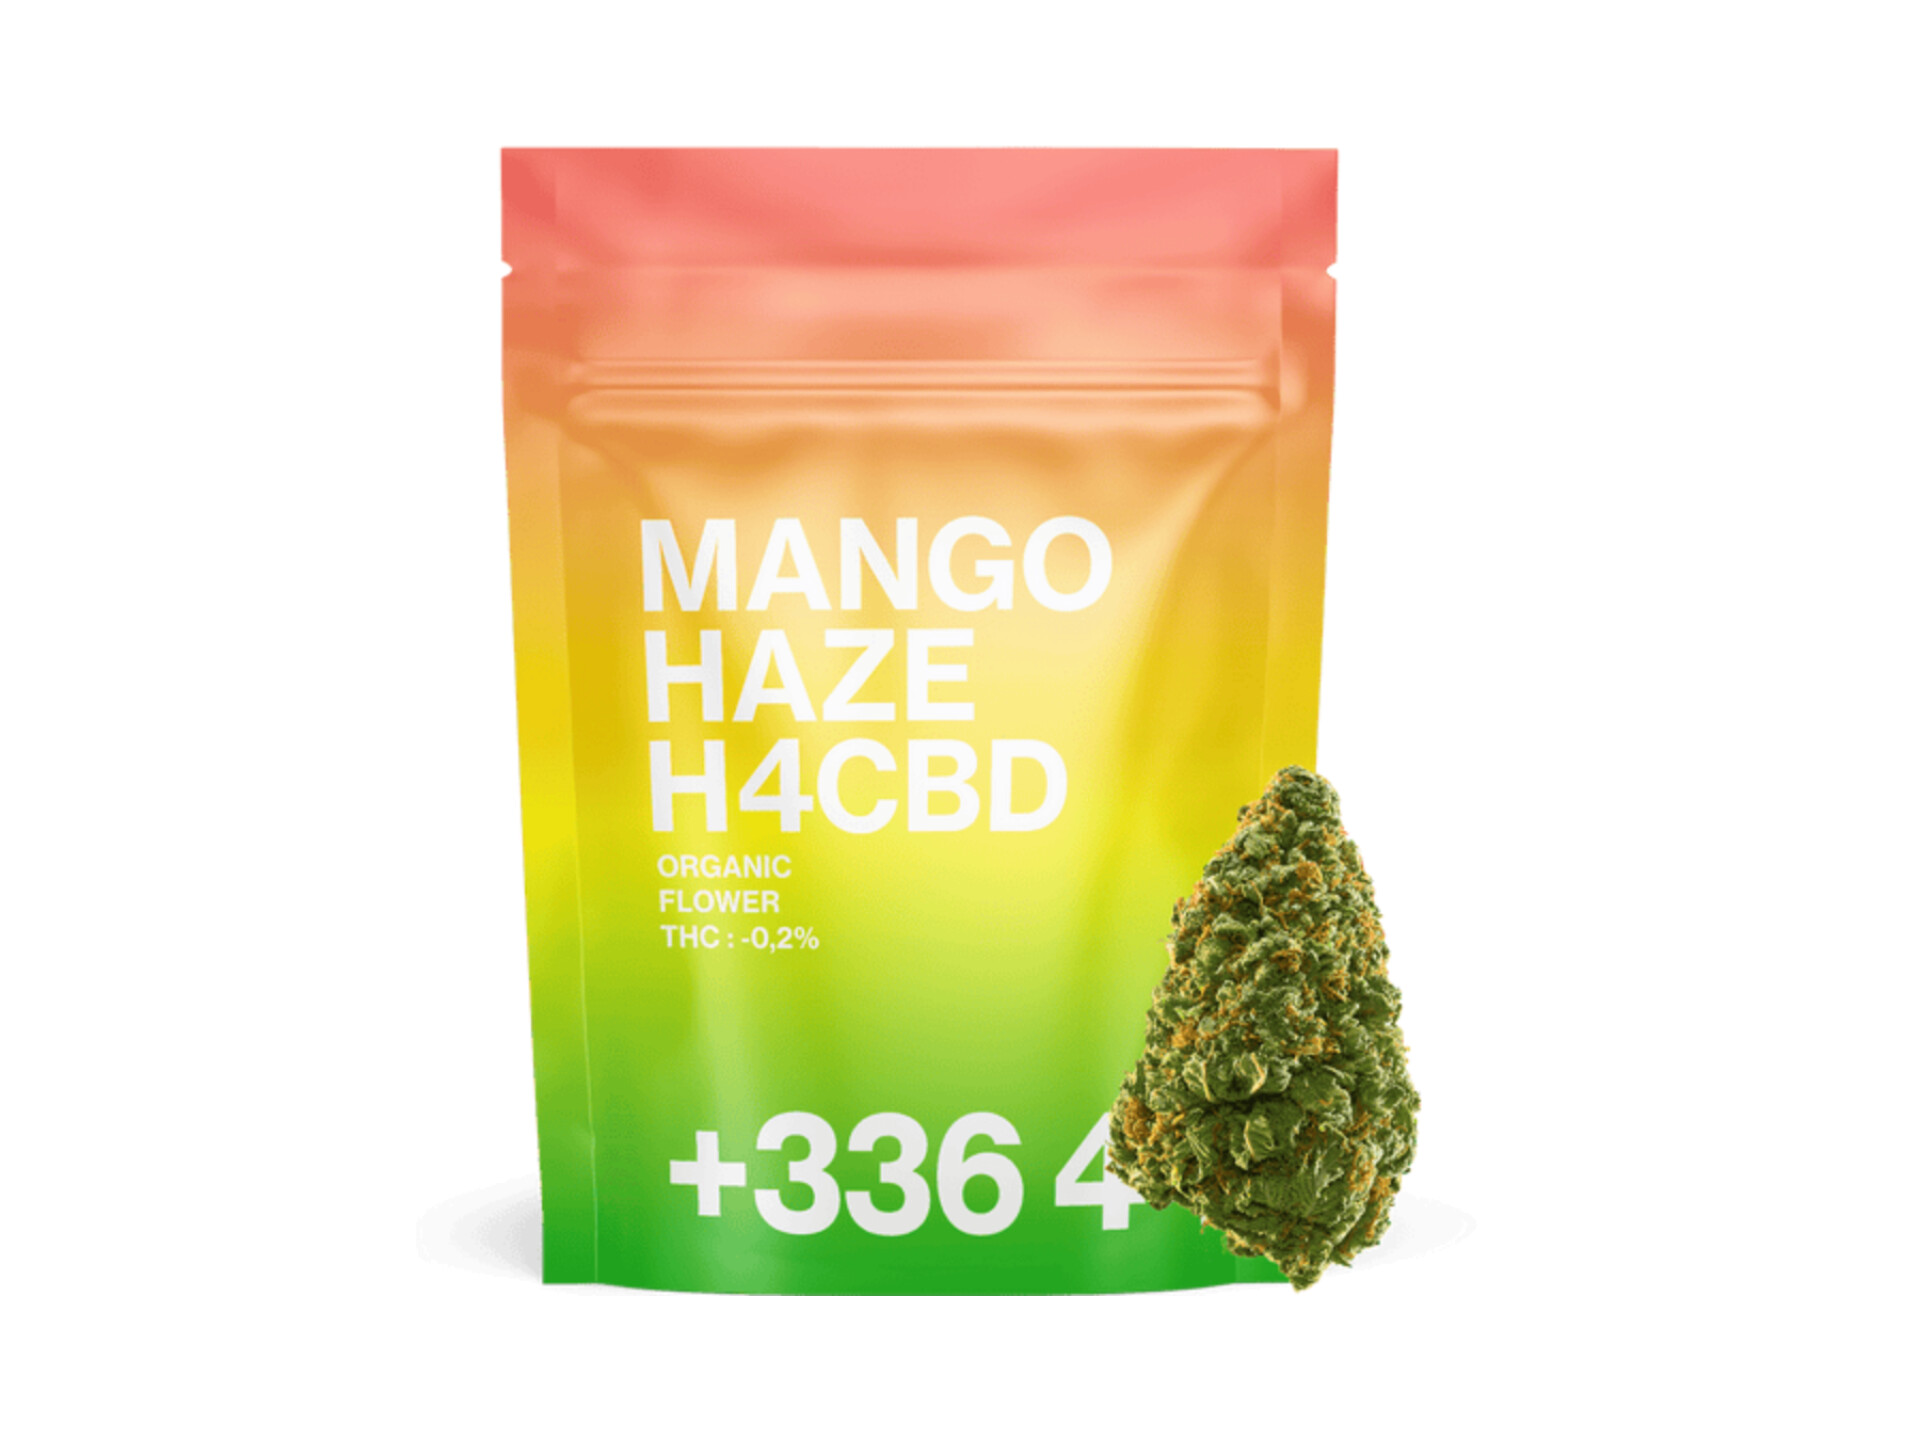 Mango Haze H4CBD : Une Fusion Exotique pour une Harmonie Totale (20gr) TealerLab 